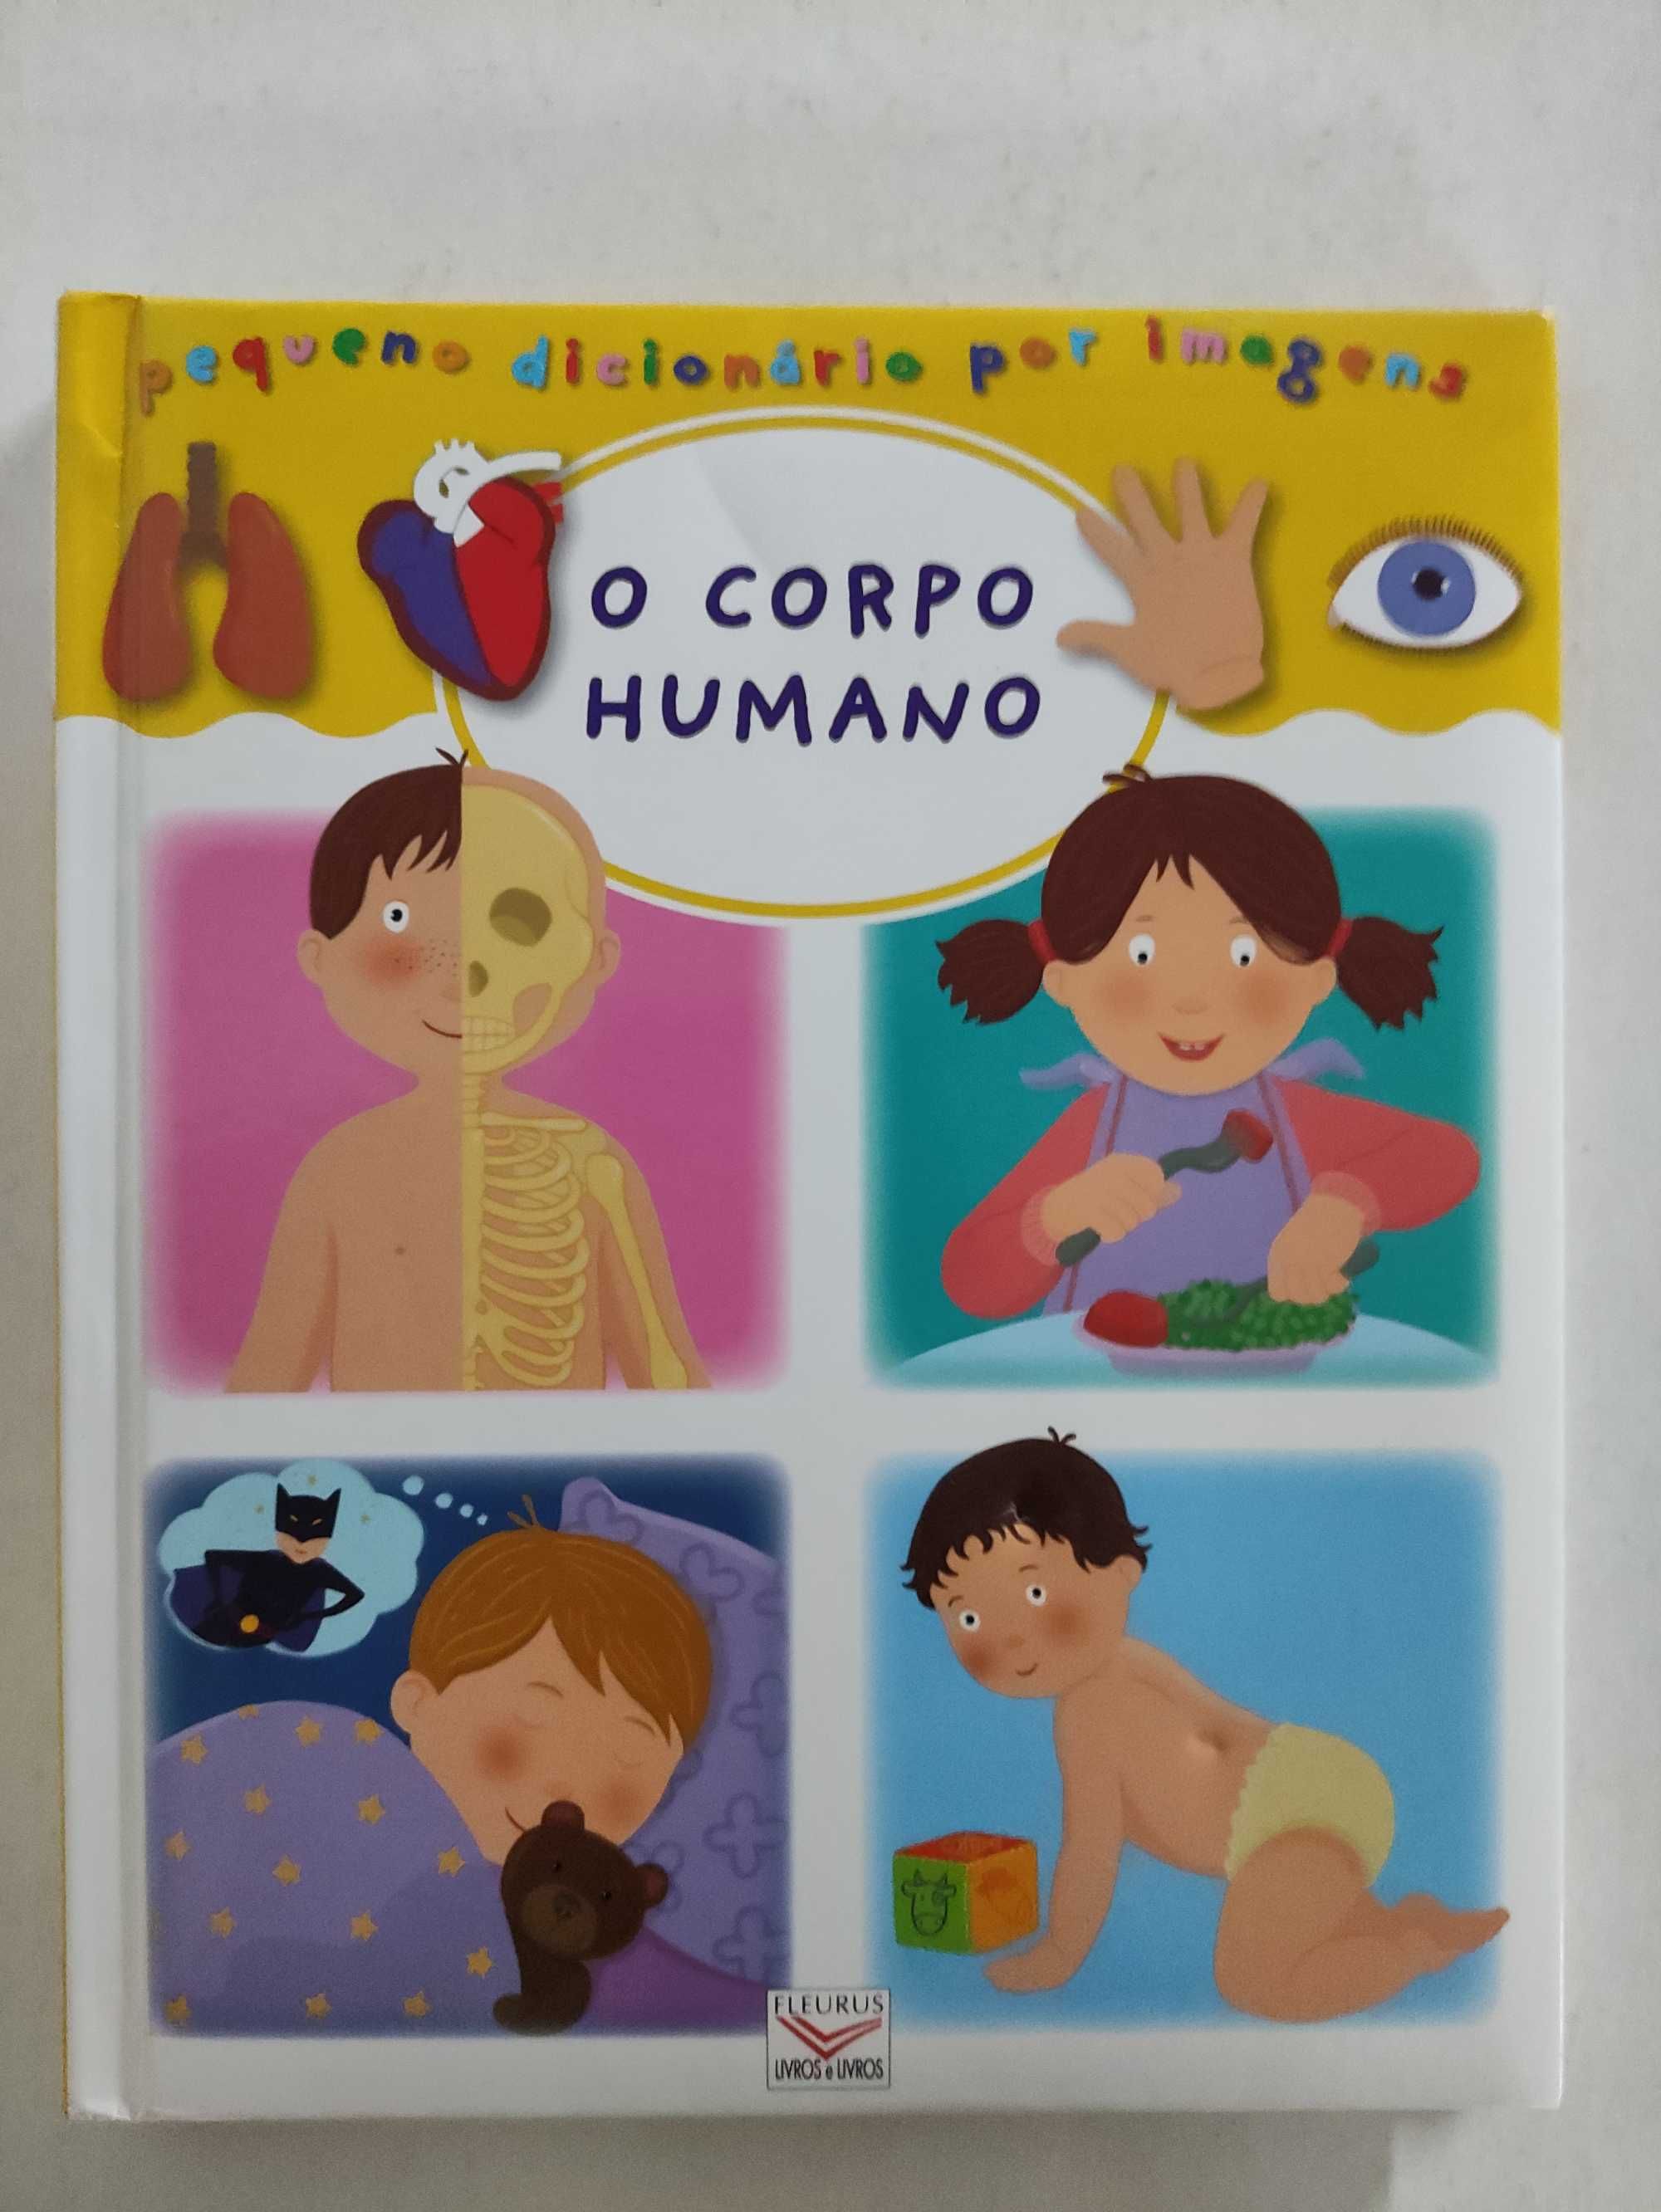 Pequeno Dicionário por Imagens: O Corpo Humano | livro infantil